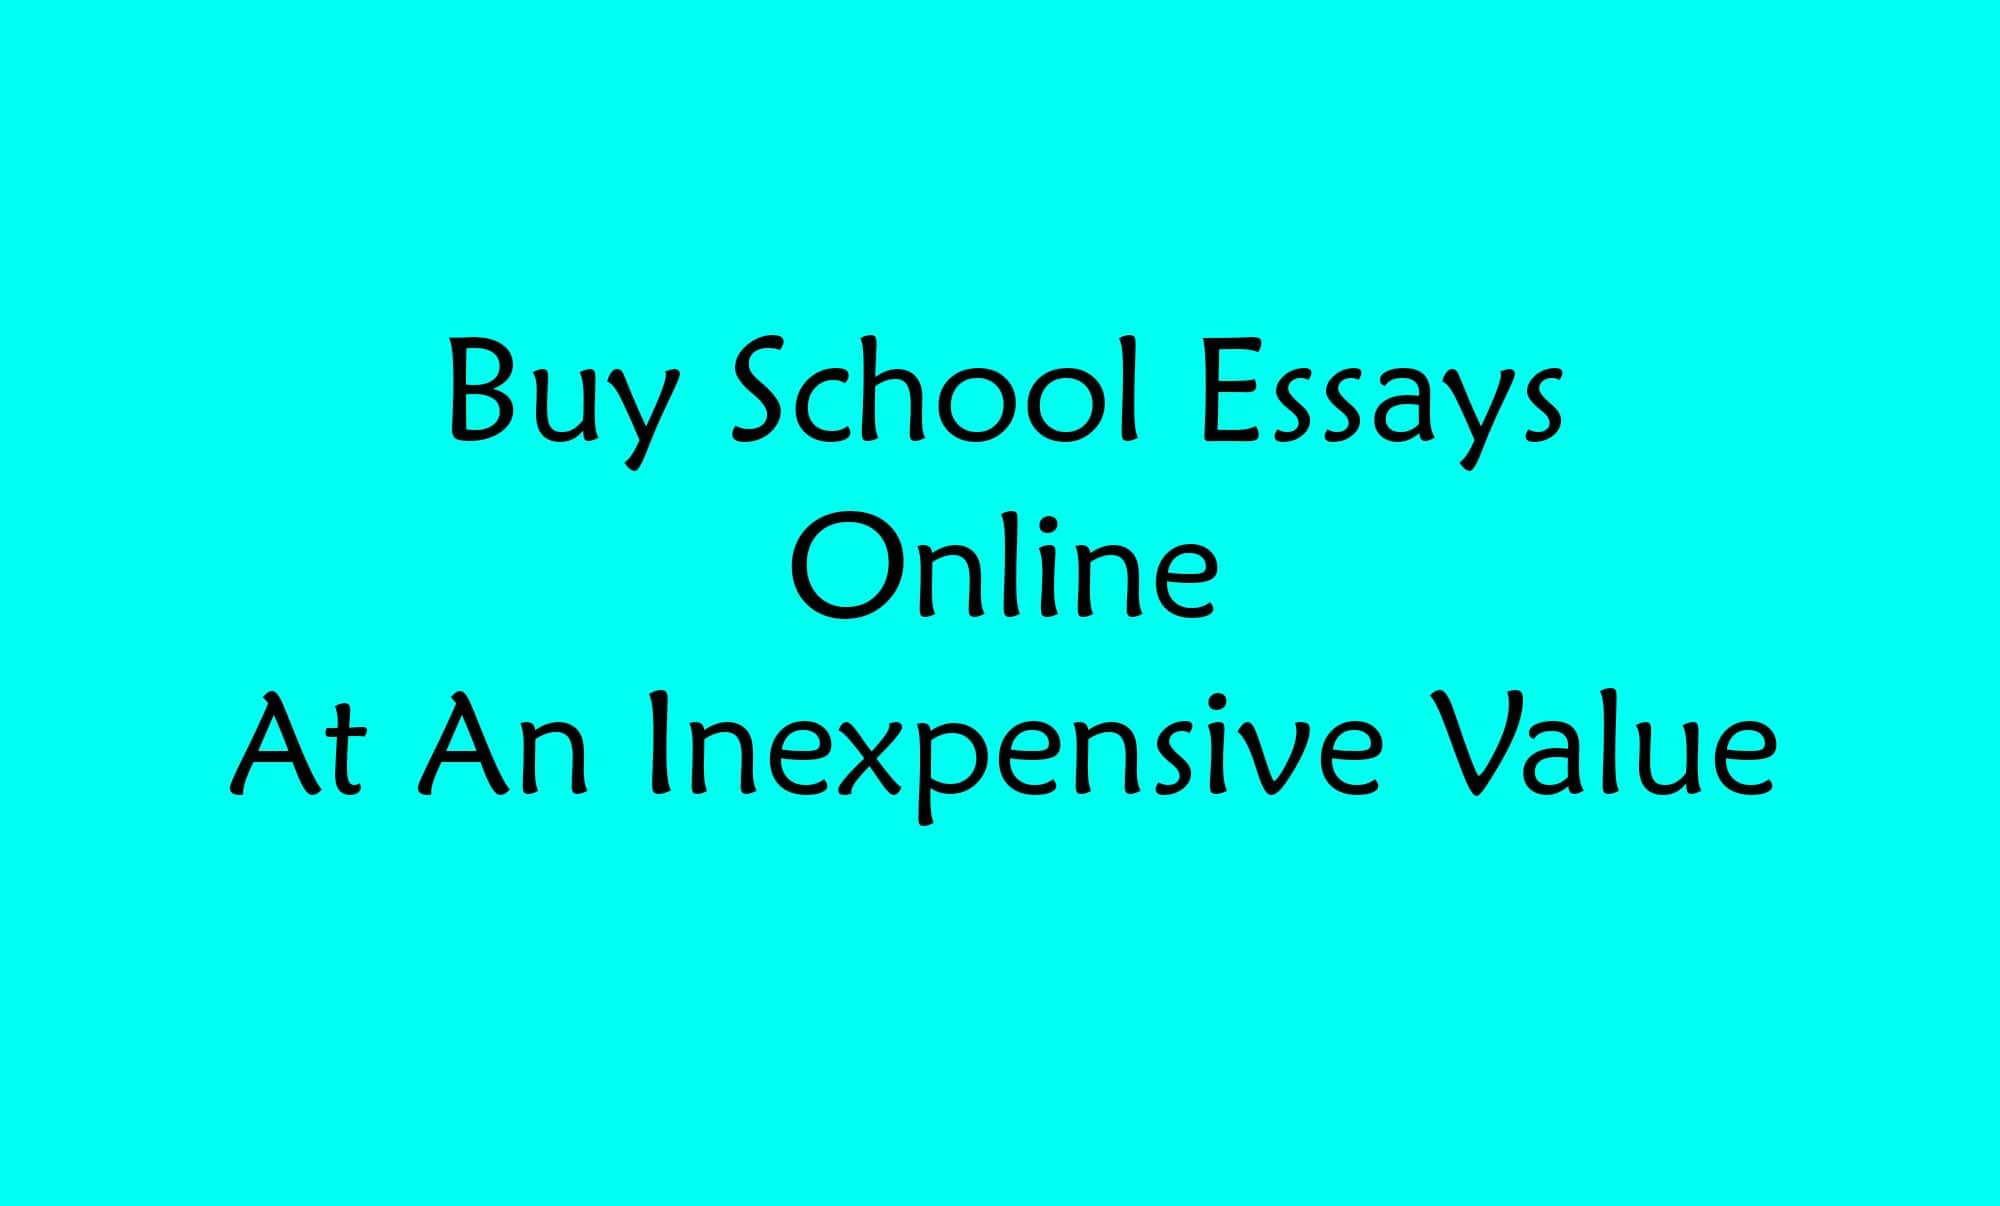 Buy school essays